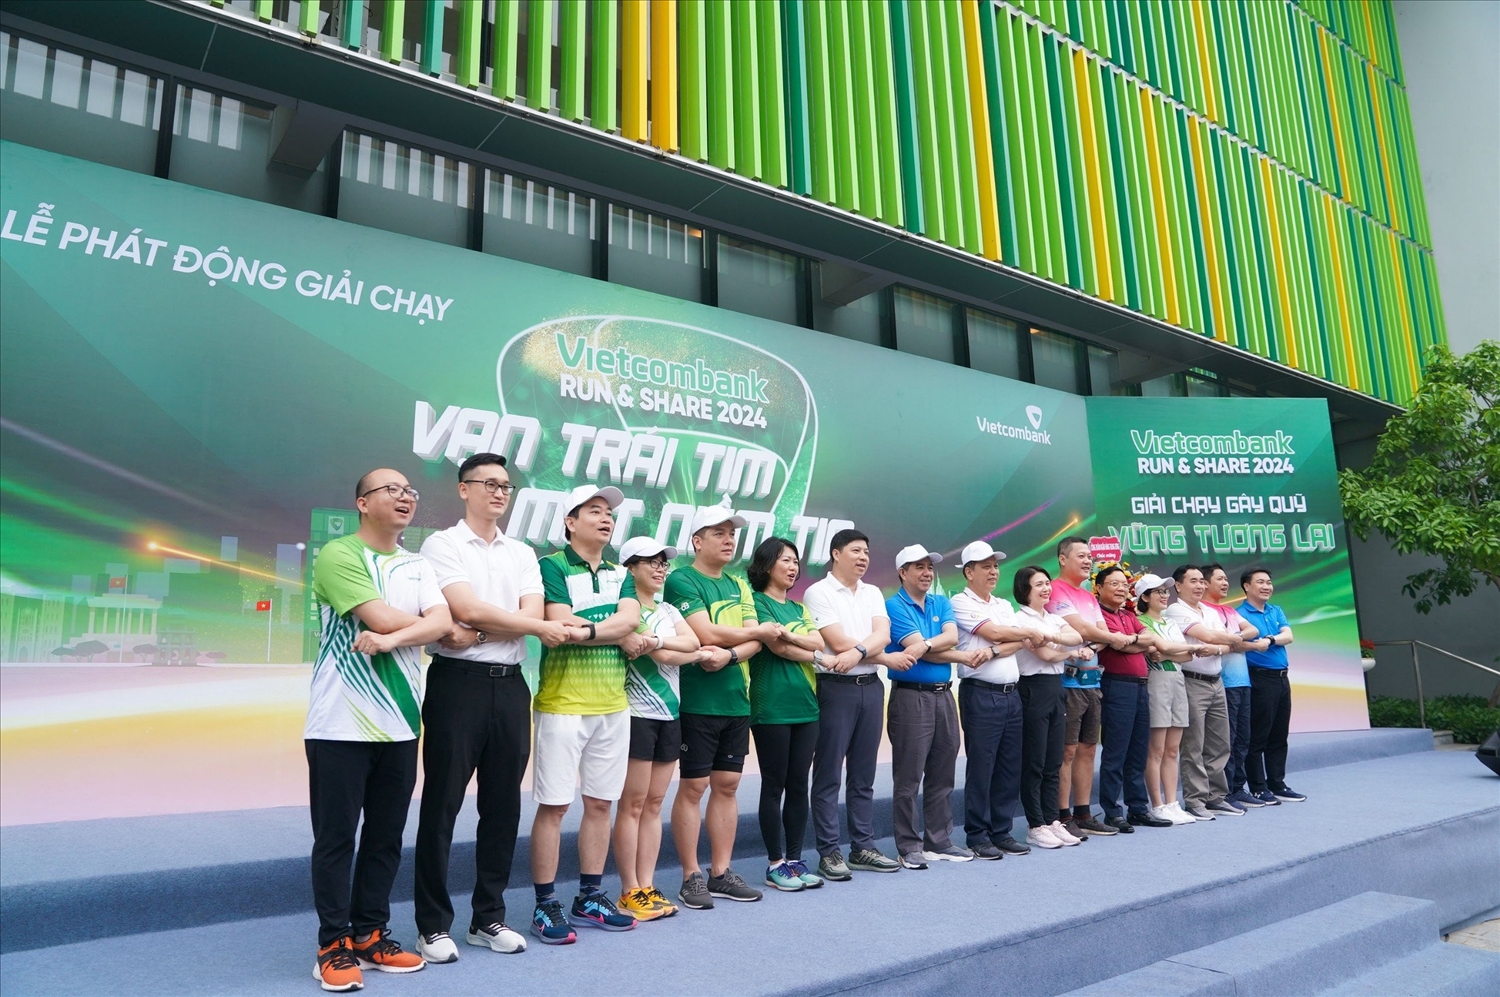 Đại diện Ban lãnh đạo Vietcombank cùng các đại biểu và VĐV chụp hình lưu niệm, thể hiện tinh thần kết nối của giải chạy “Vietcombank Run & Share: Vạn trái tim - Một niềm tin”.